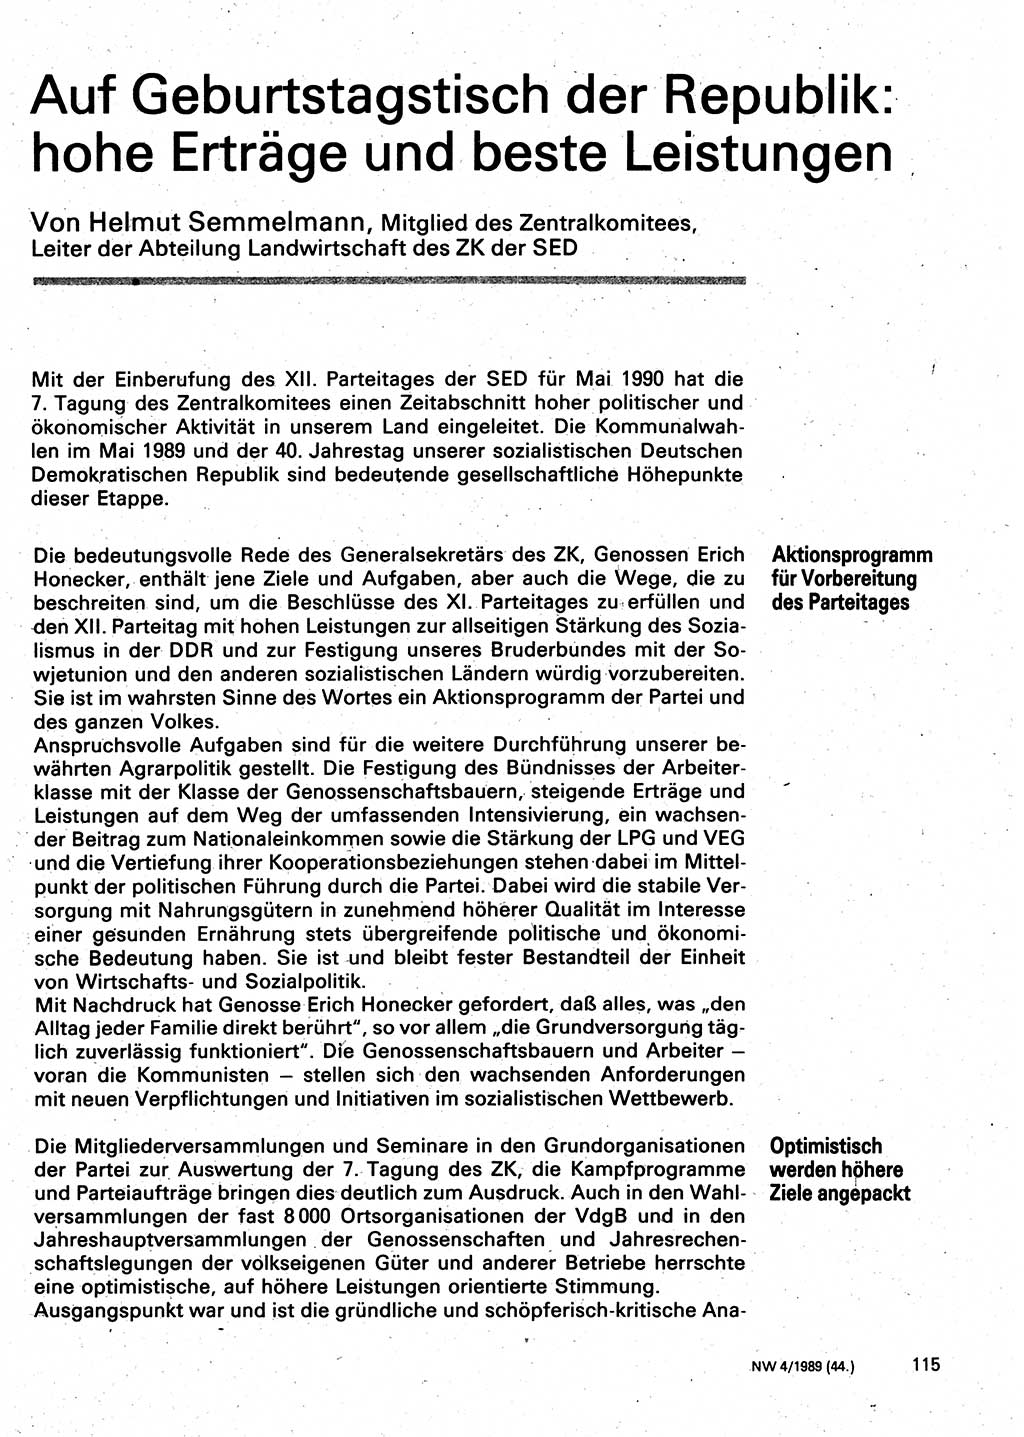 Neuer Weg (NW), Organ des Zentralkomitees (ZK) der SED (Sozialistische Einheitspartei Deutschlands) für Fragen des Parteilebens, 44. Jahrgang [Deutsche Demokratische Republik (DDR)] 1989, Seite 115 (NW ZK SED DDR 1989, S. 115)